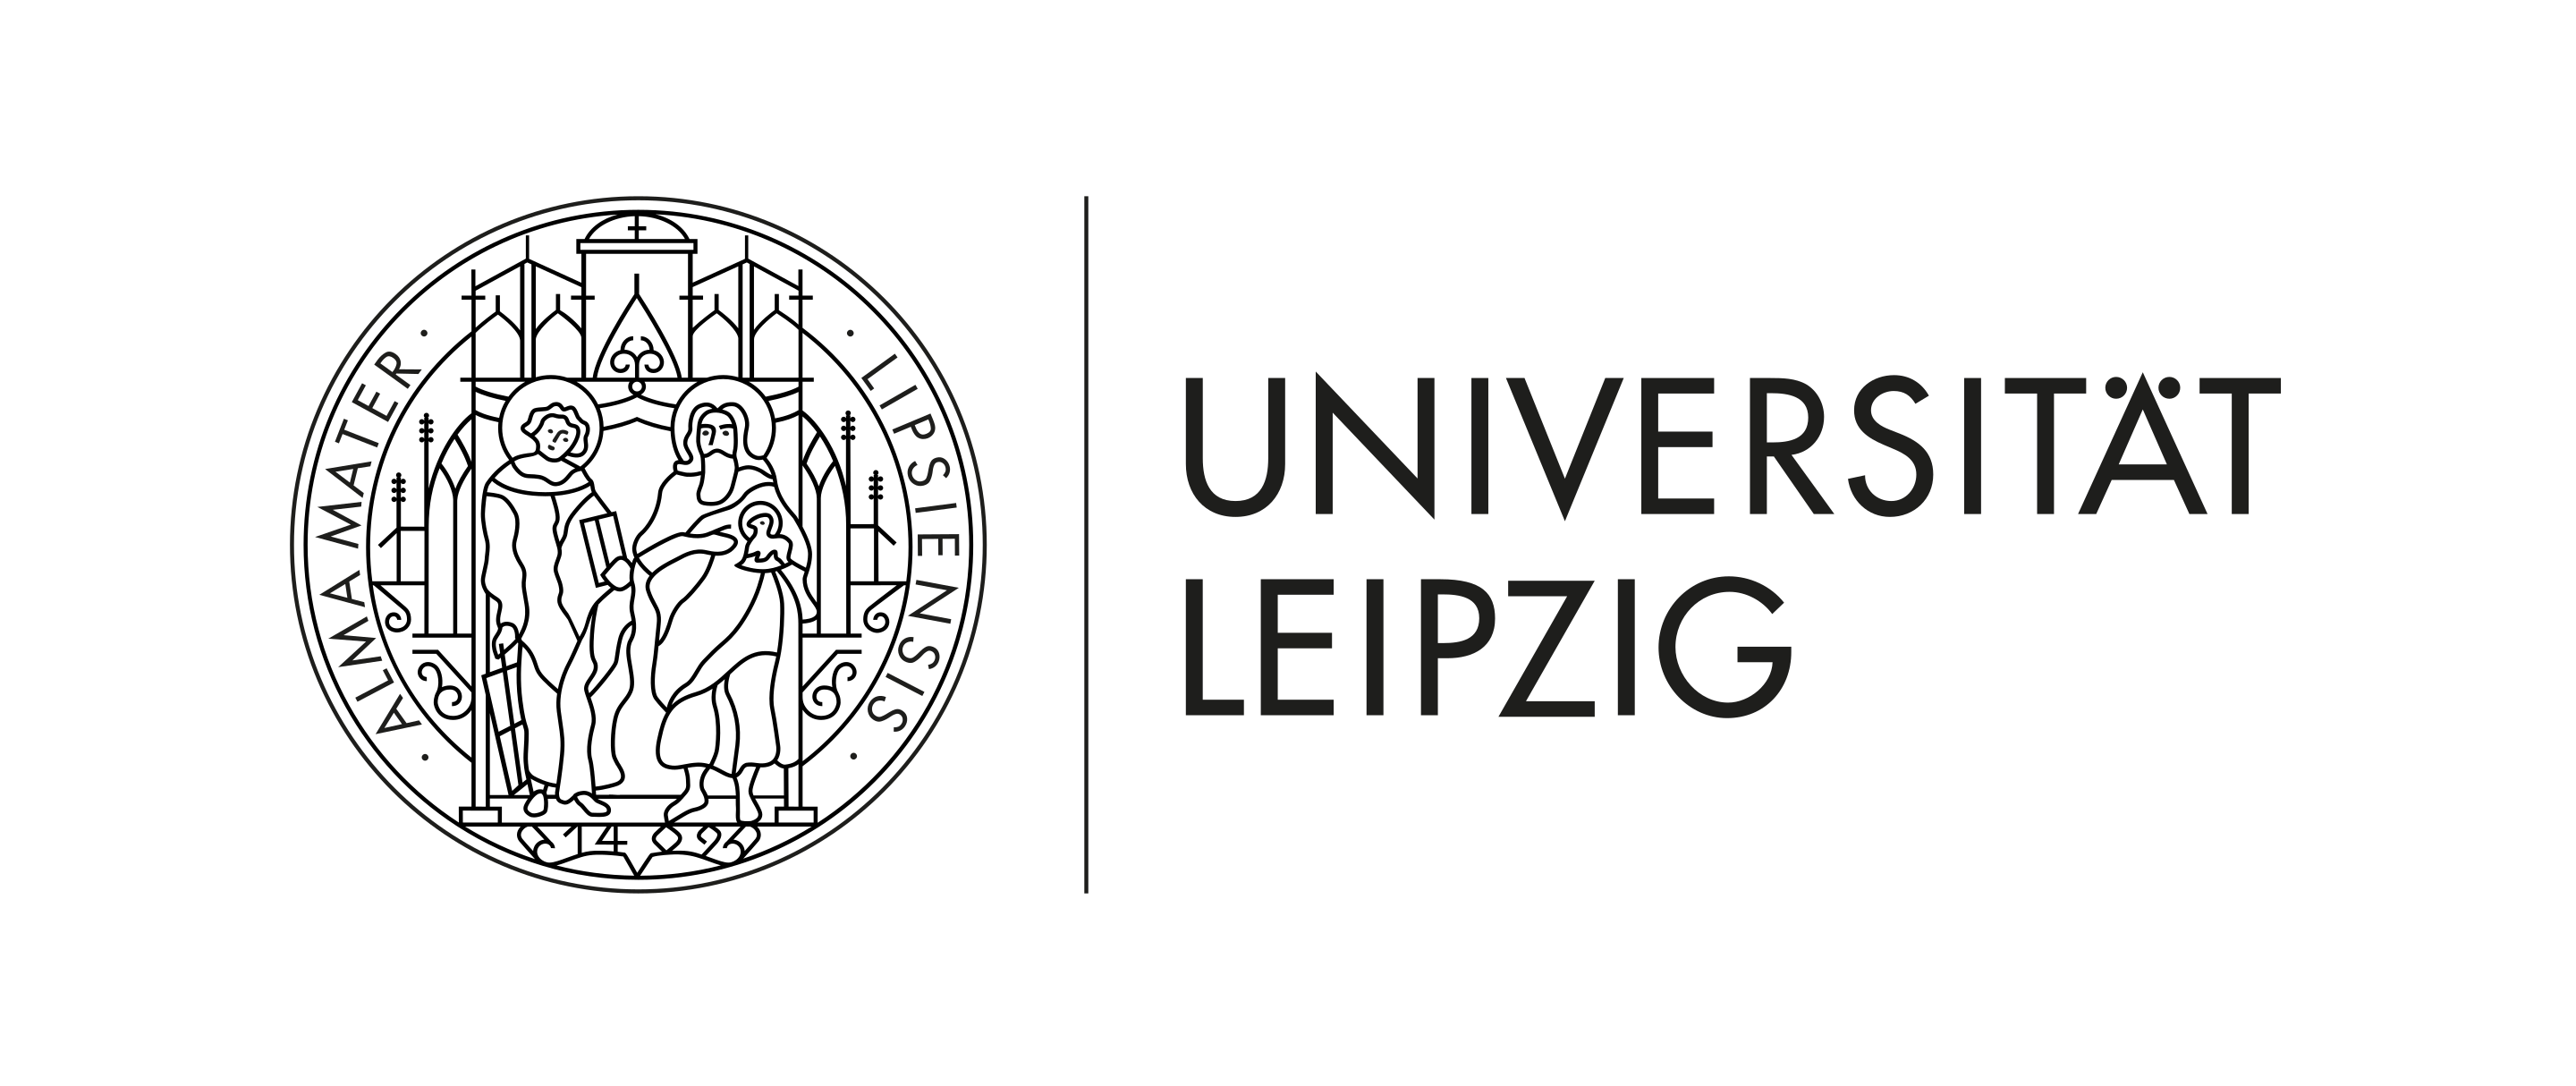 Université de Leipzig